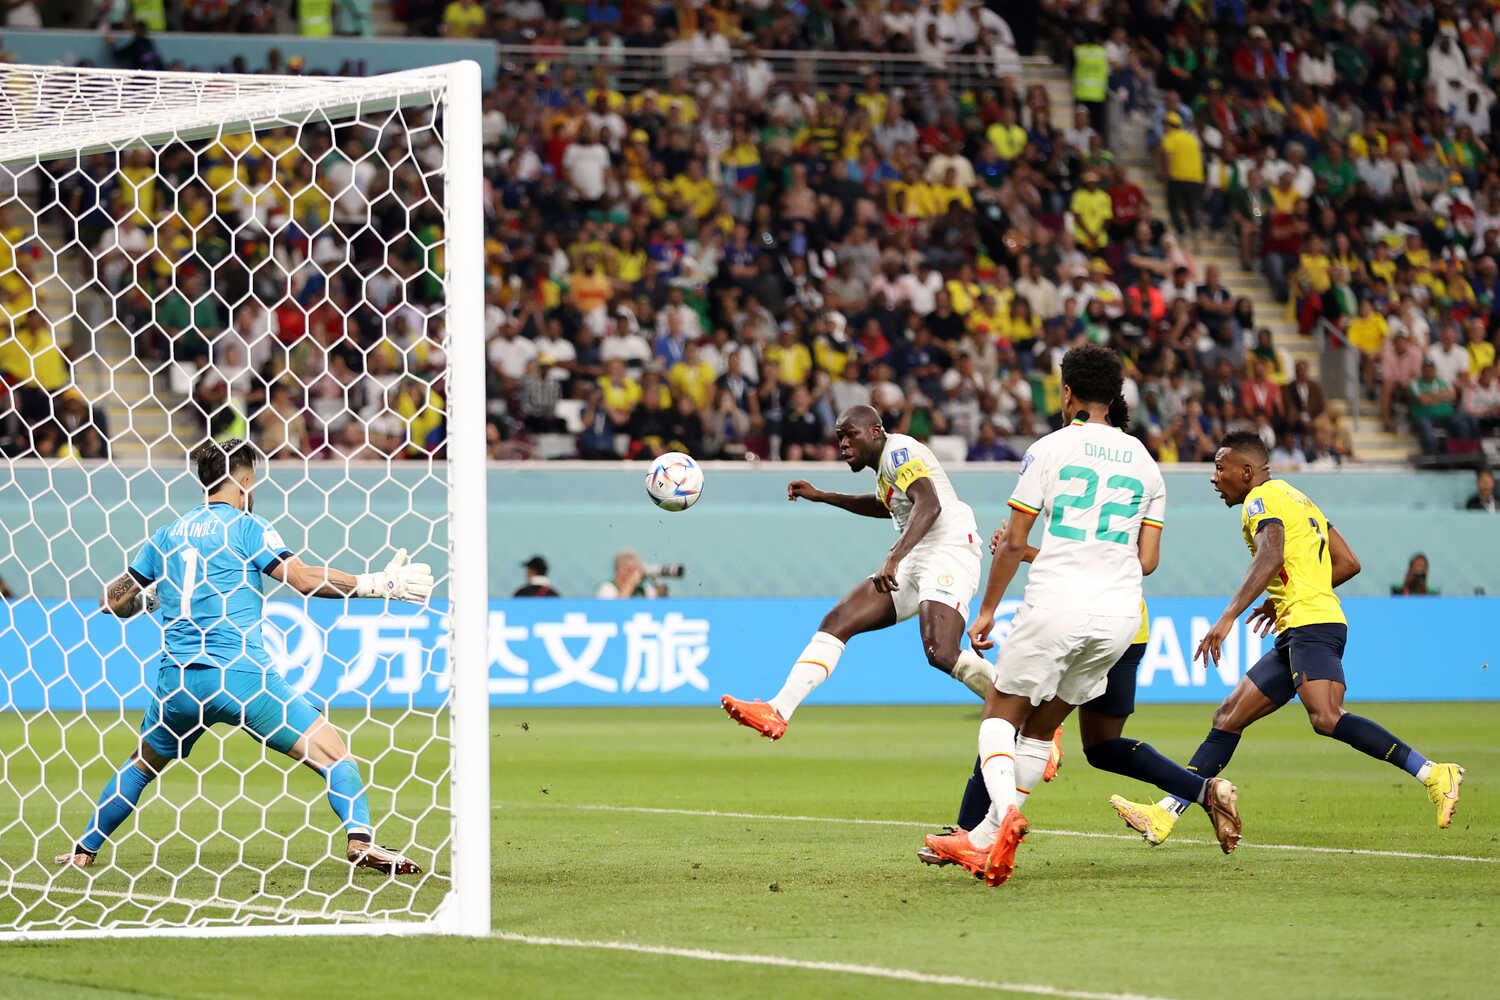 सेनेगल फिफा विश्वकपको नकआउट चरणमा